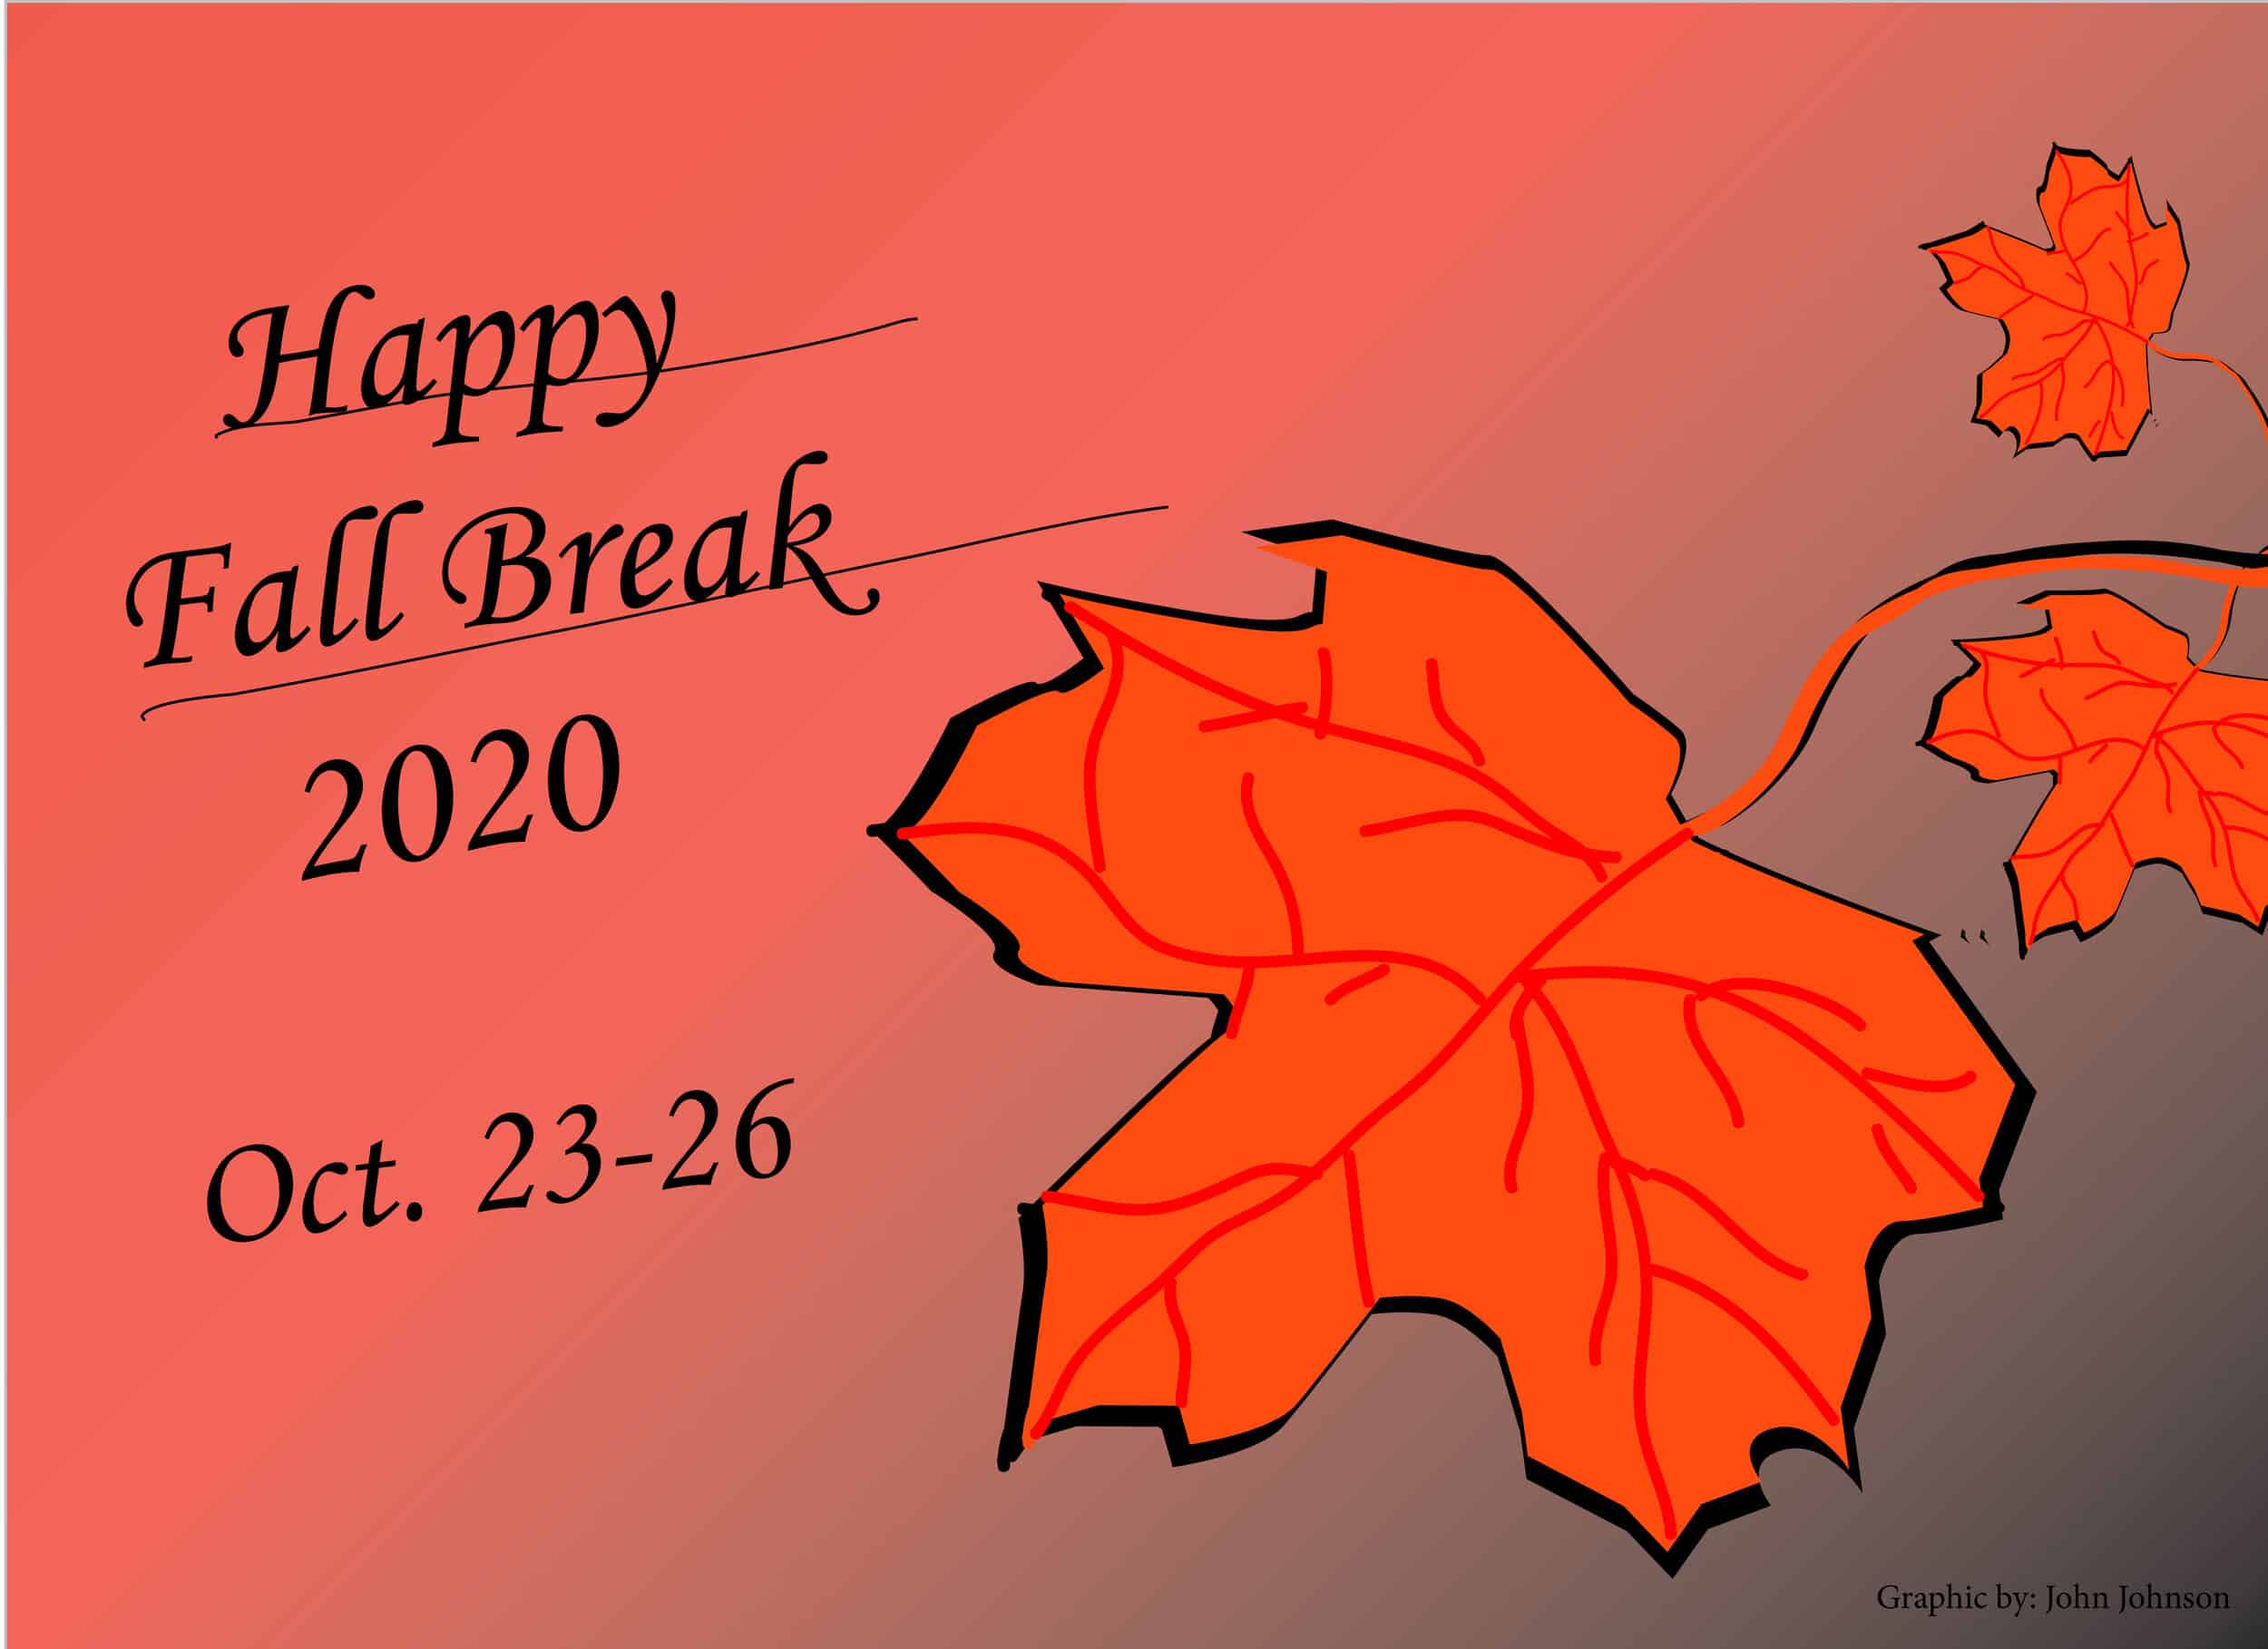 Happy fall break Crusaders!